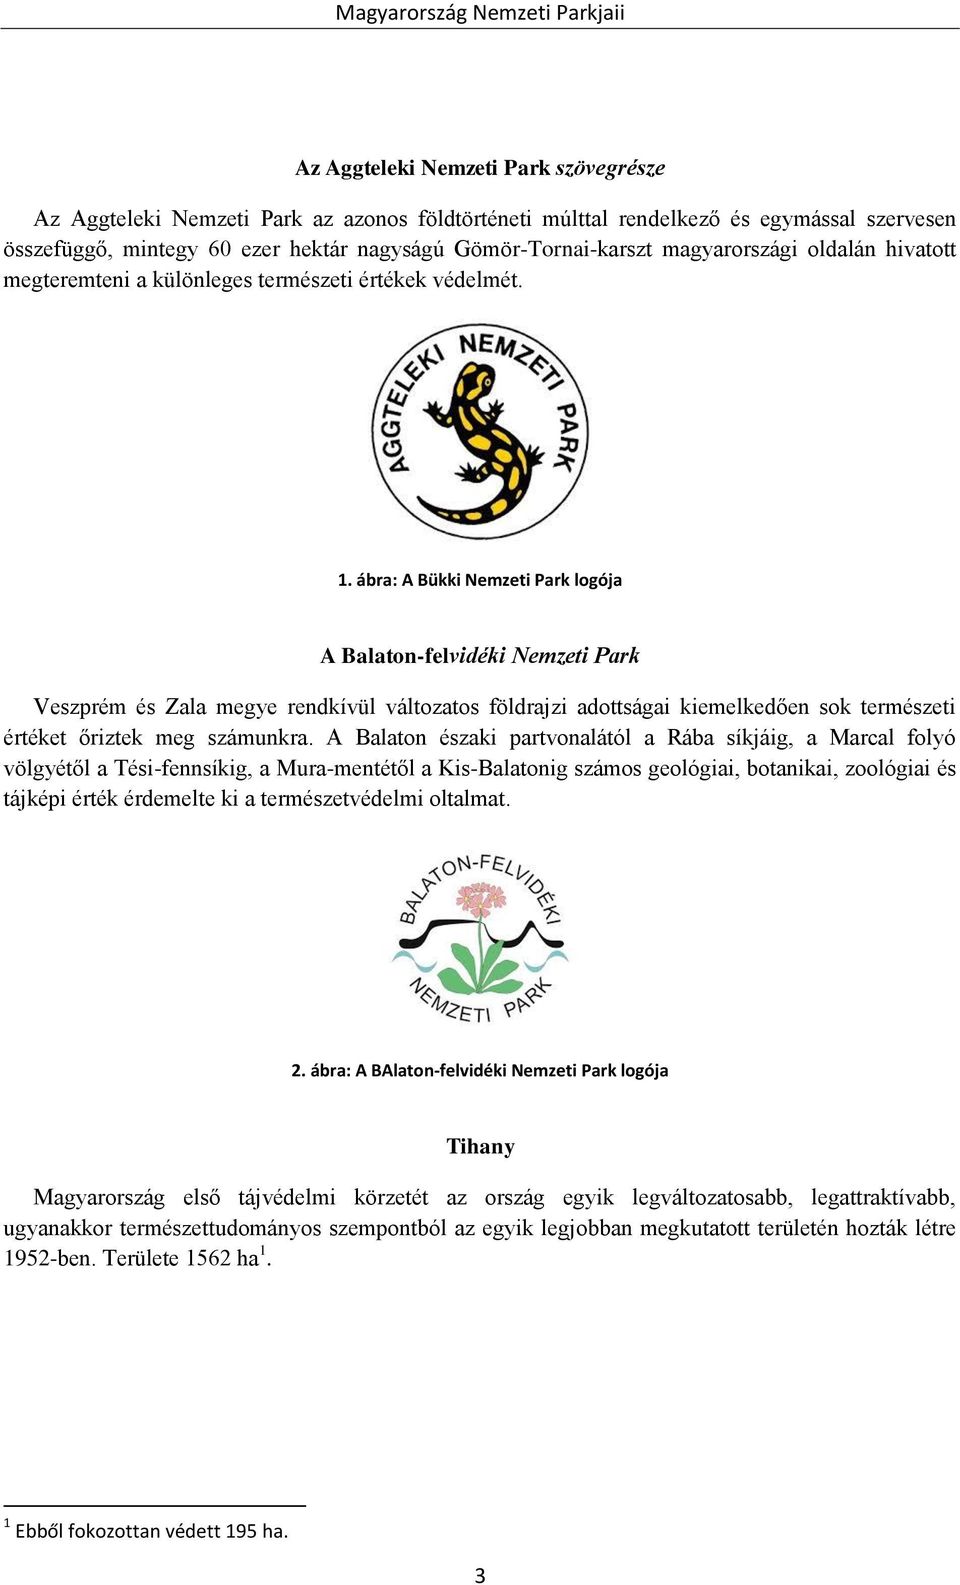 ábra: A Bükki Nemzeti Park logója A Balaton-felvidéki Nemzeti Park Veszprém és Zala megye rendkívül változatos földrajzi adottságai kiemelkedően sok természeti értéket őriztek meg számunkra.